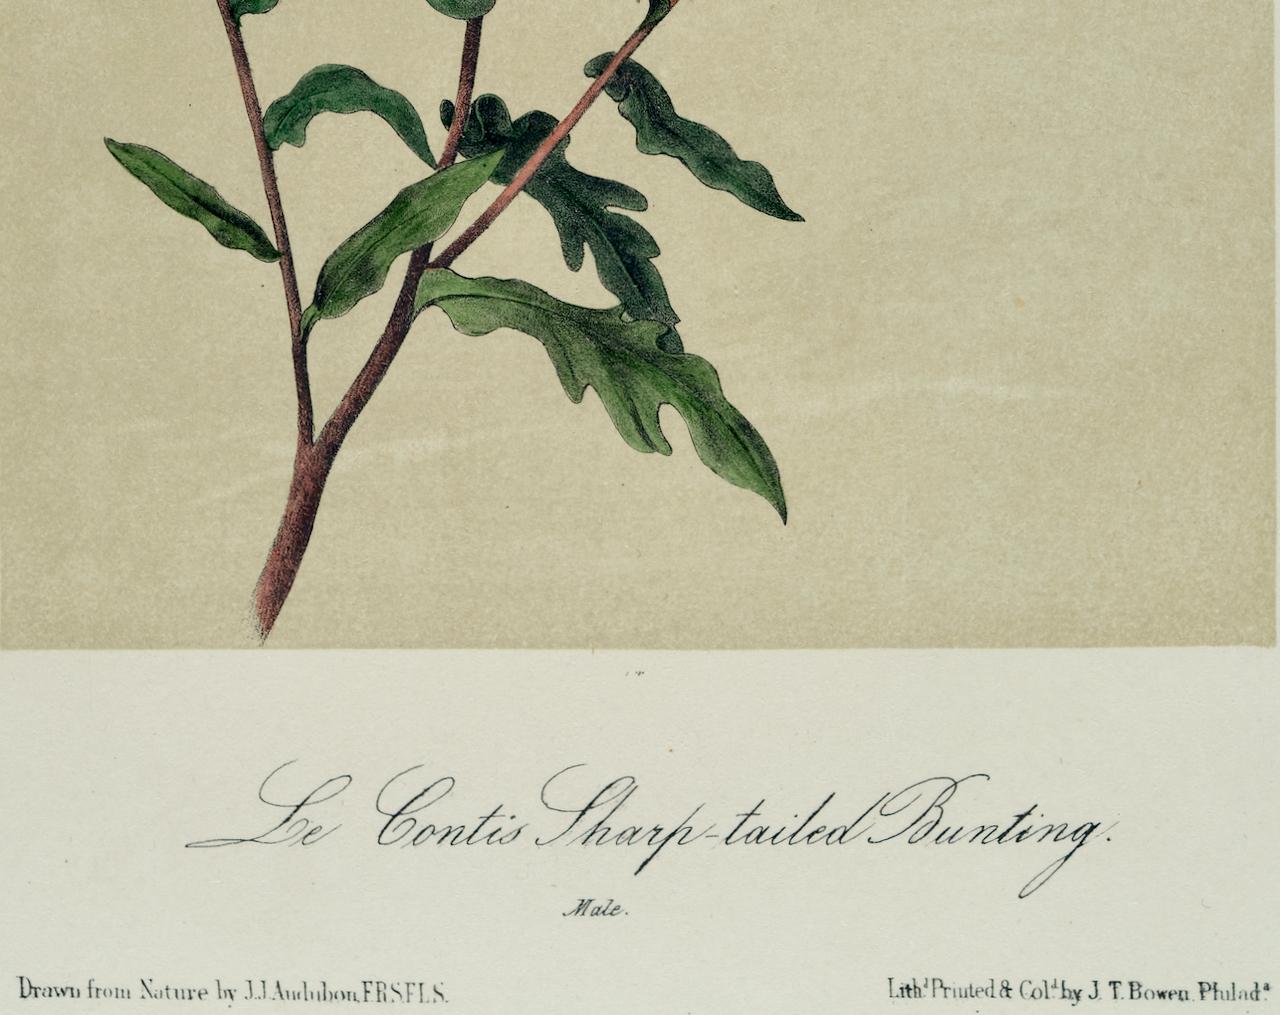 Dies ist eine originale handkolorierte Lithographie von John James Audubon aus dem 19. Jahrhundert mit dem Titel 